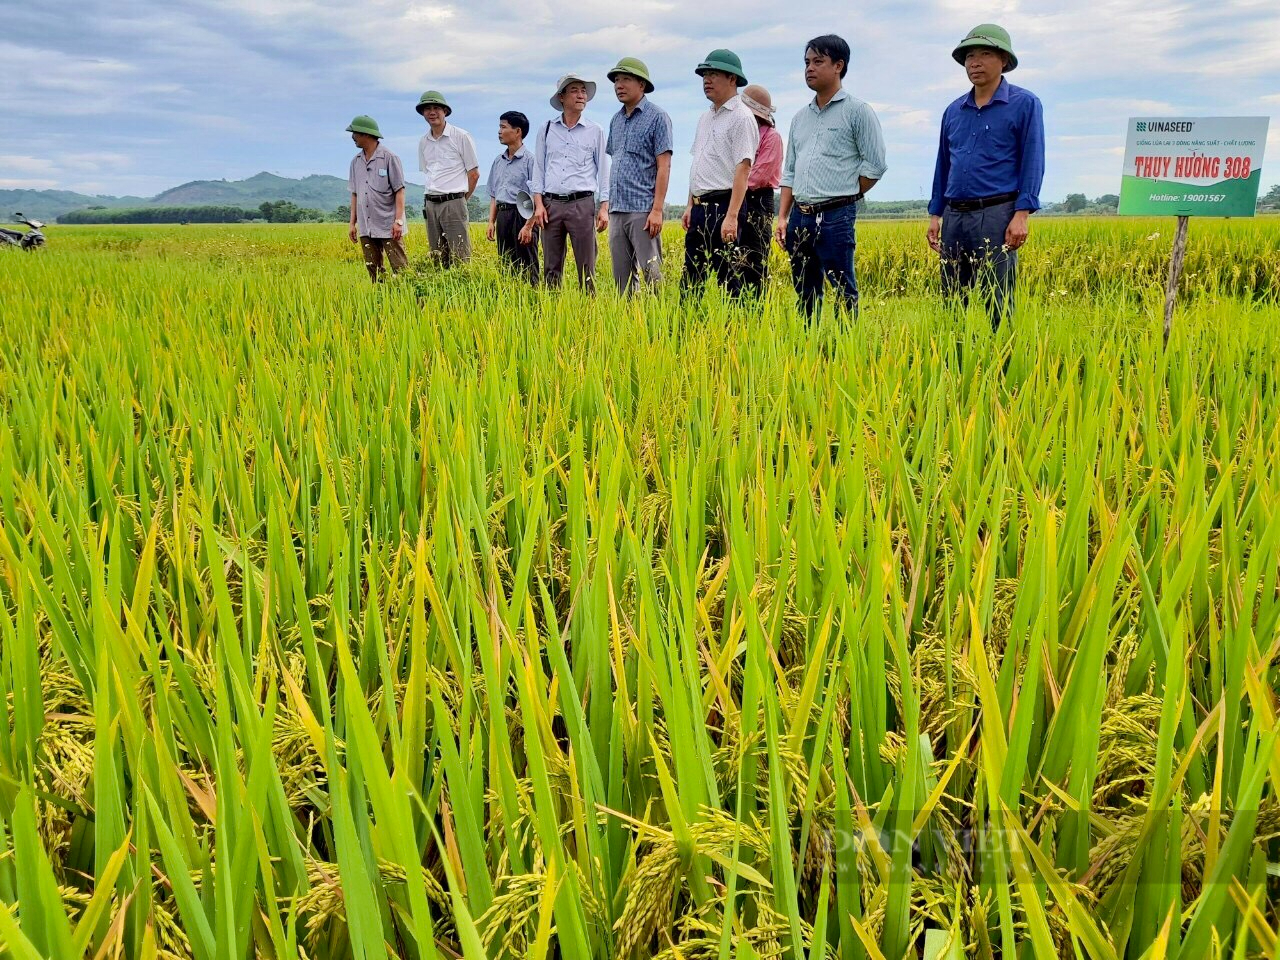 Thanh Hóa Mô hình thâm canh lúa cải tiến SRI mang lại lợi ích cho bà con  nông dân